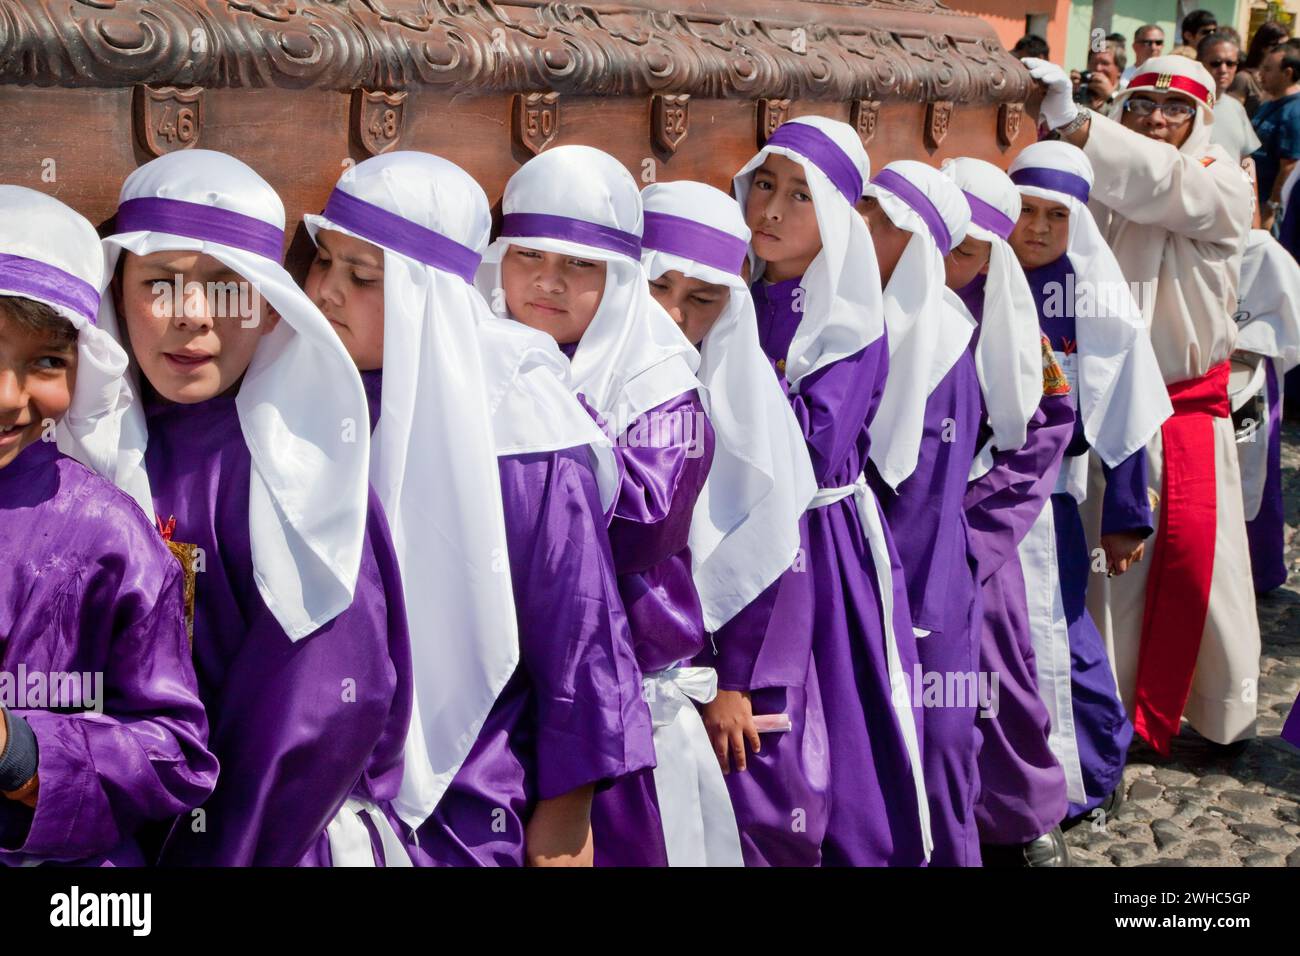 Antigua, Guatemala. Ragazzi adolescenti che portano un float in una processione religiosa durante la settimana Santa, la Semana Santa. Foto Stock